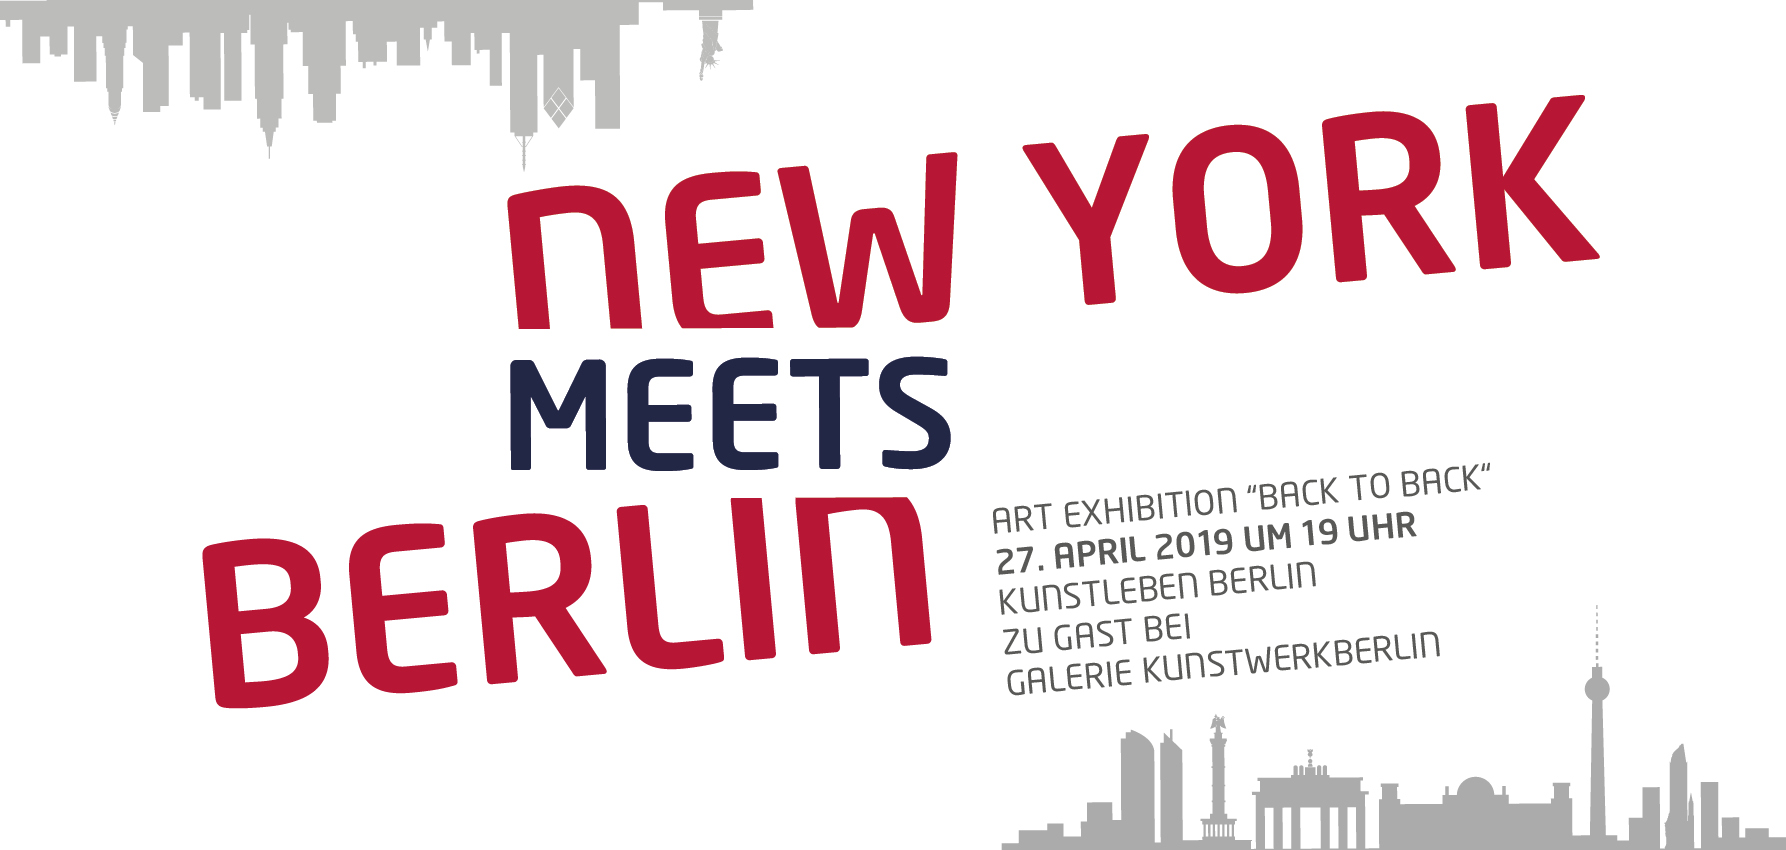 New York meets Berlin 2019, Kunstleben Berlin bei Kunstwerkberlin